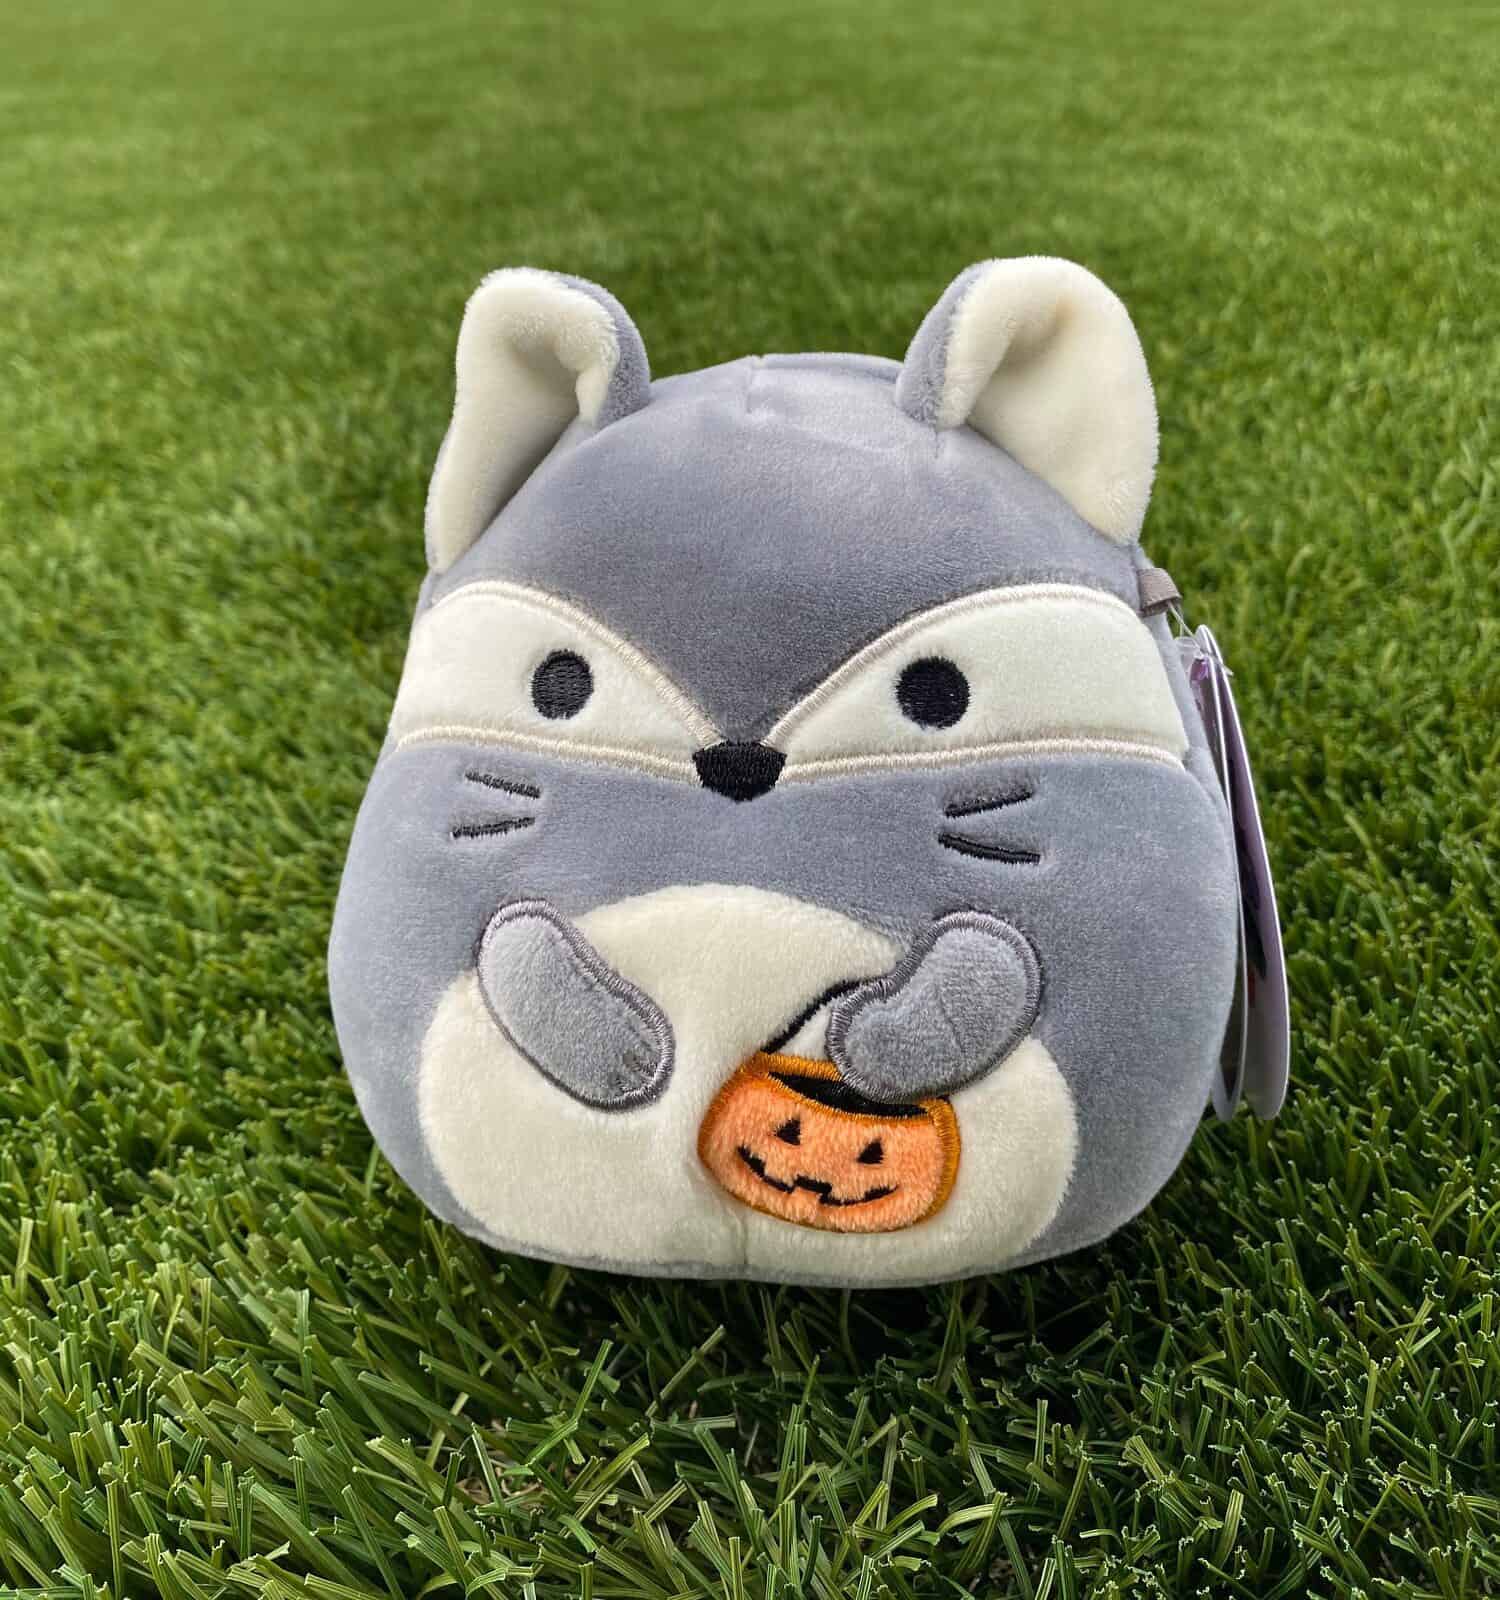 Fox squishmallow in the grass